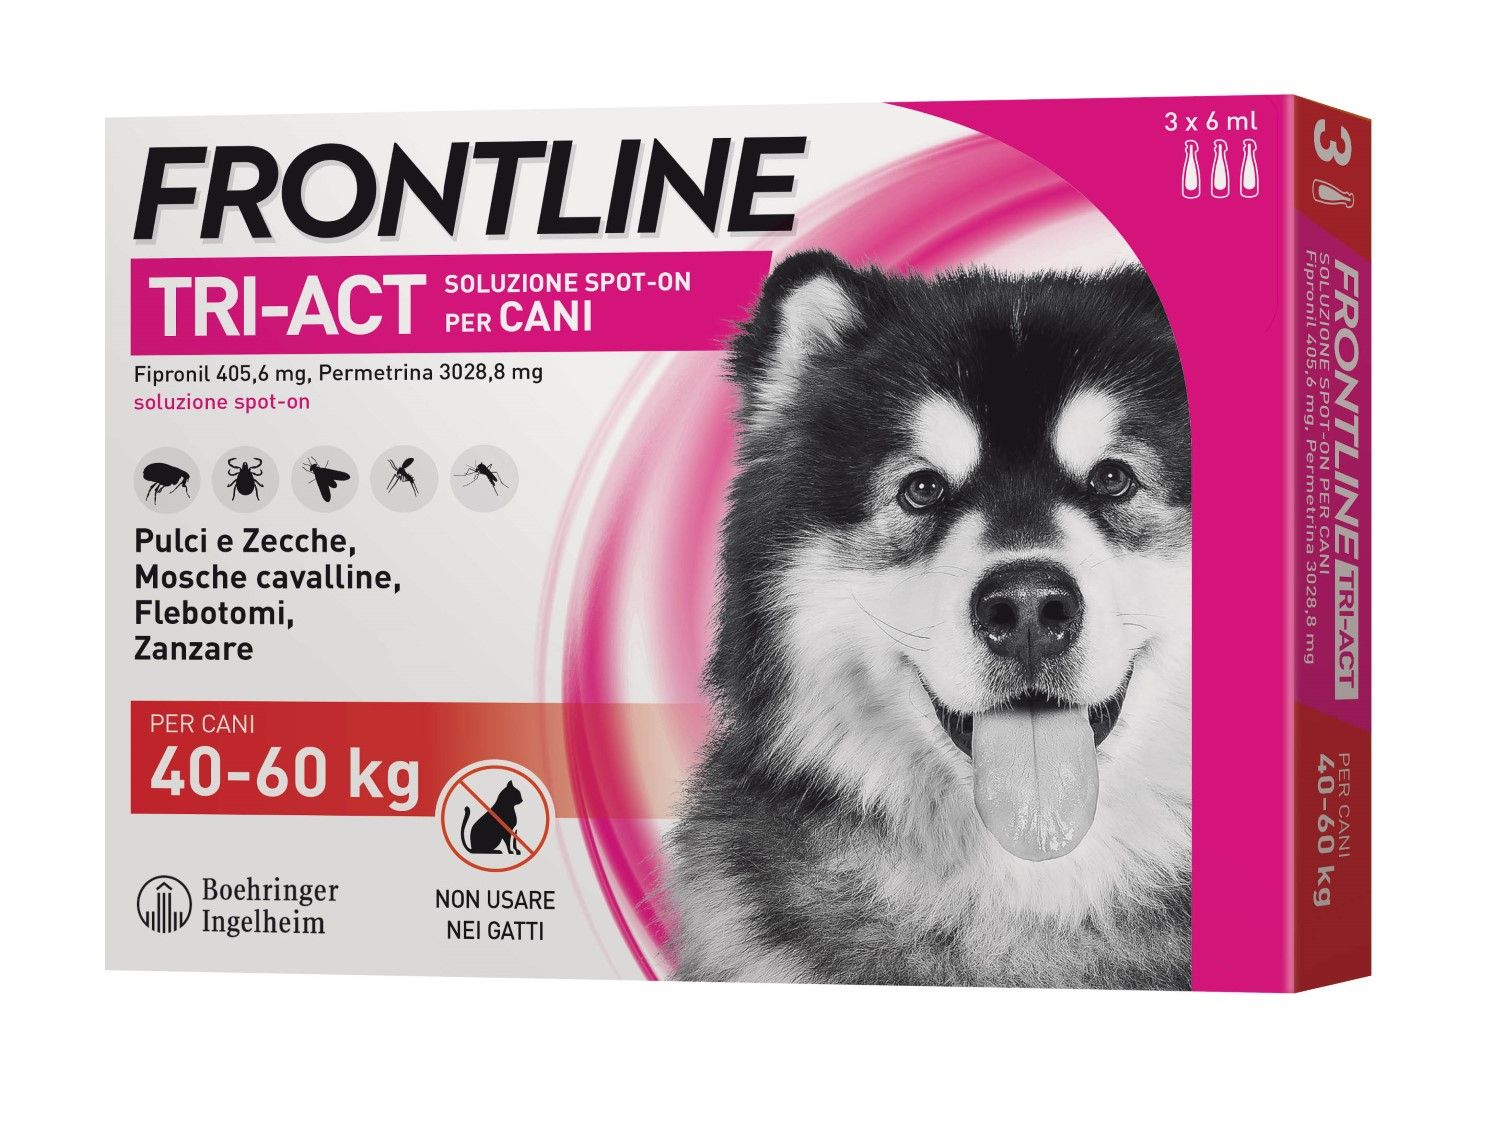 Frontline Tri-act Soluzione Antiparassiti Spot-on Cani 3 Pipette